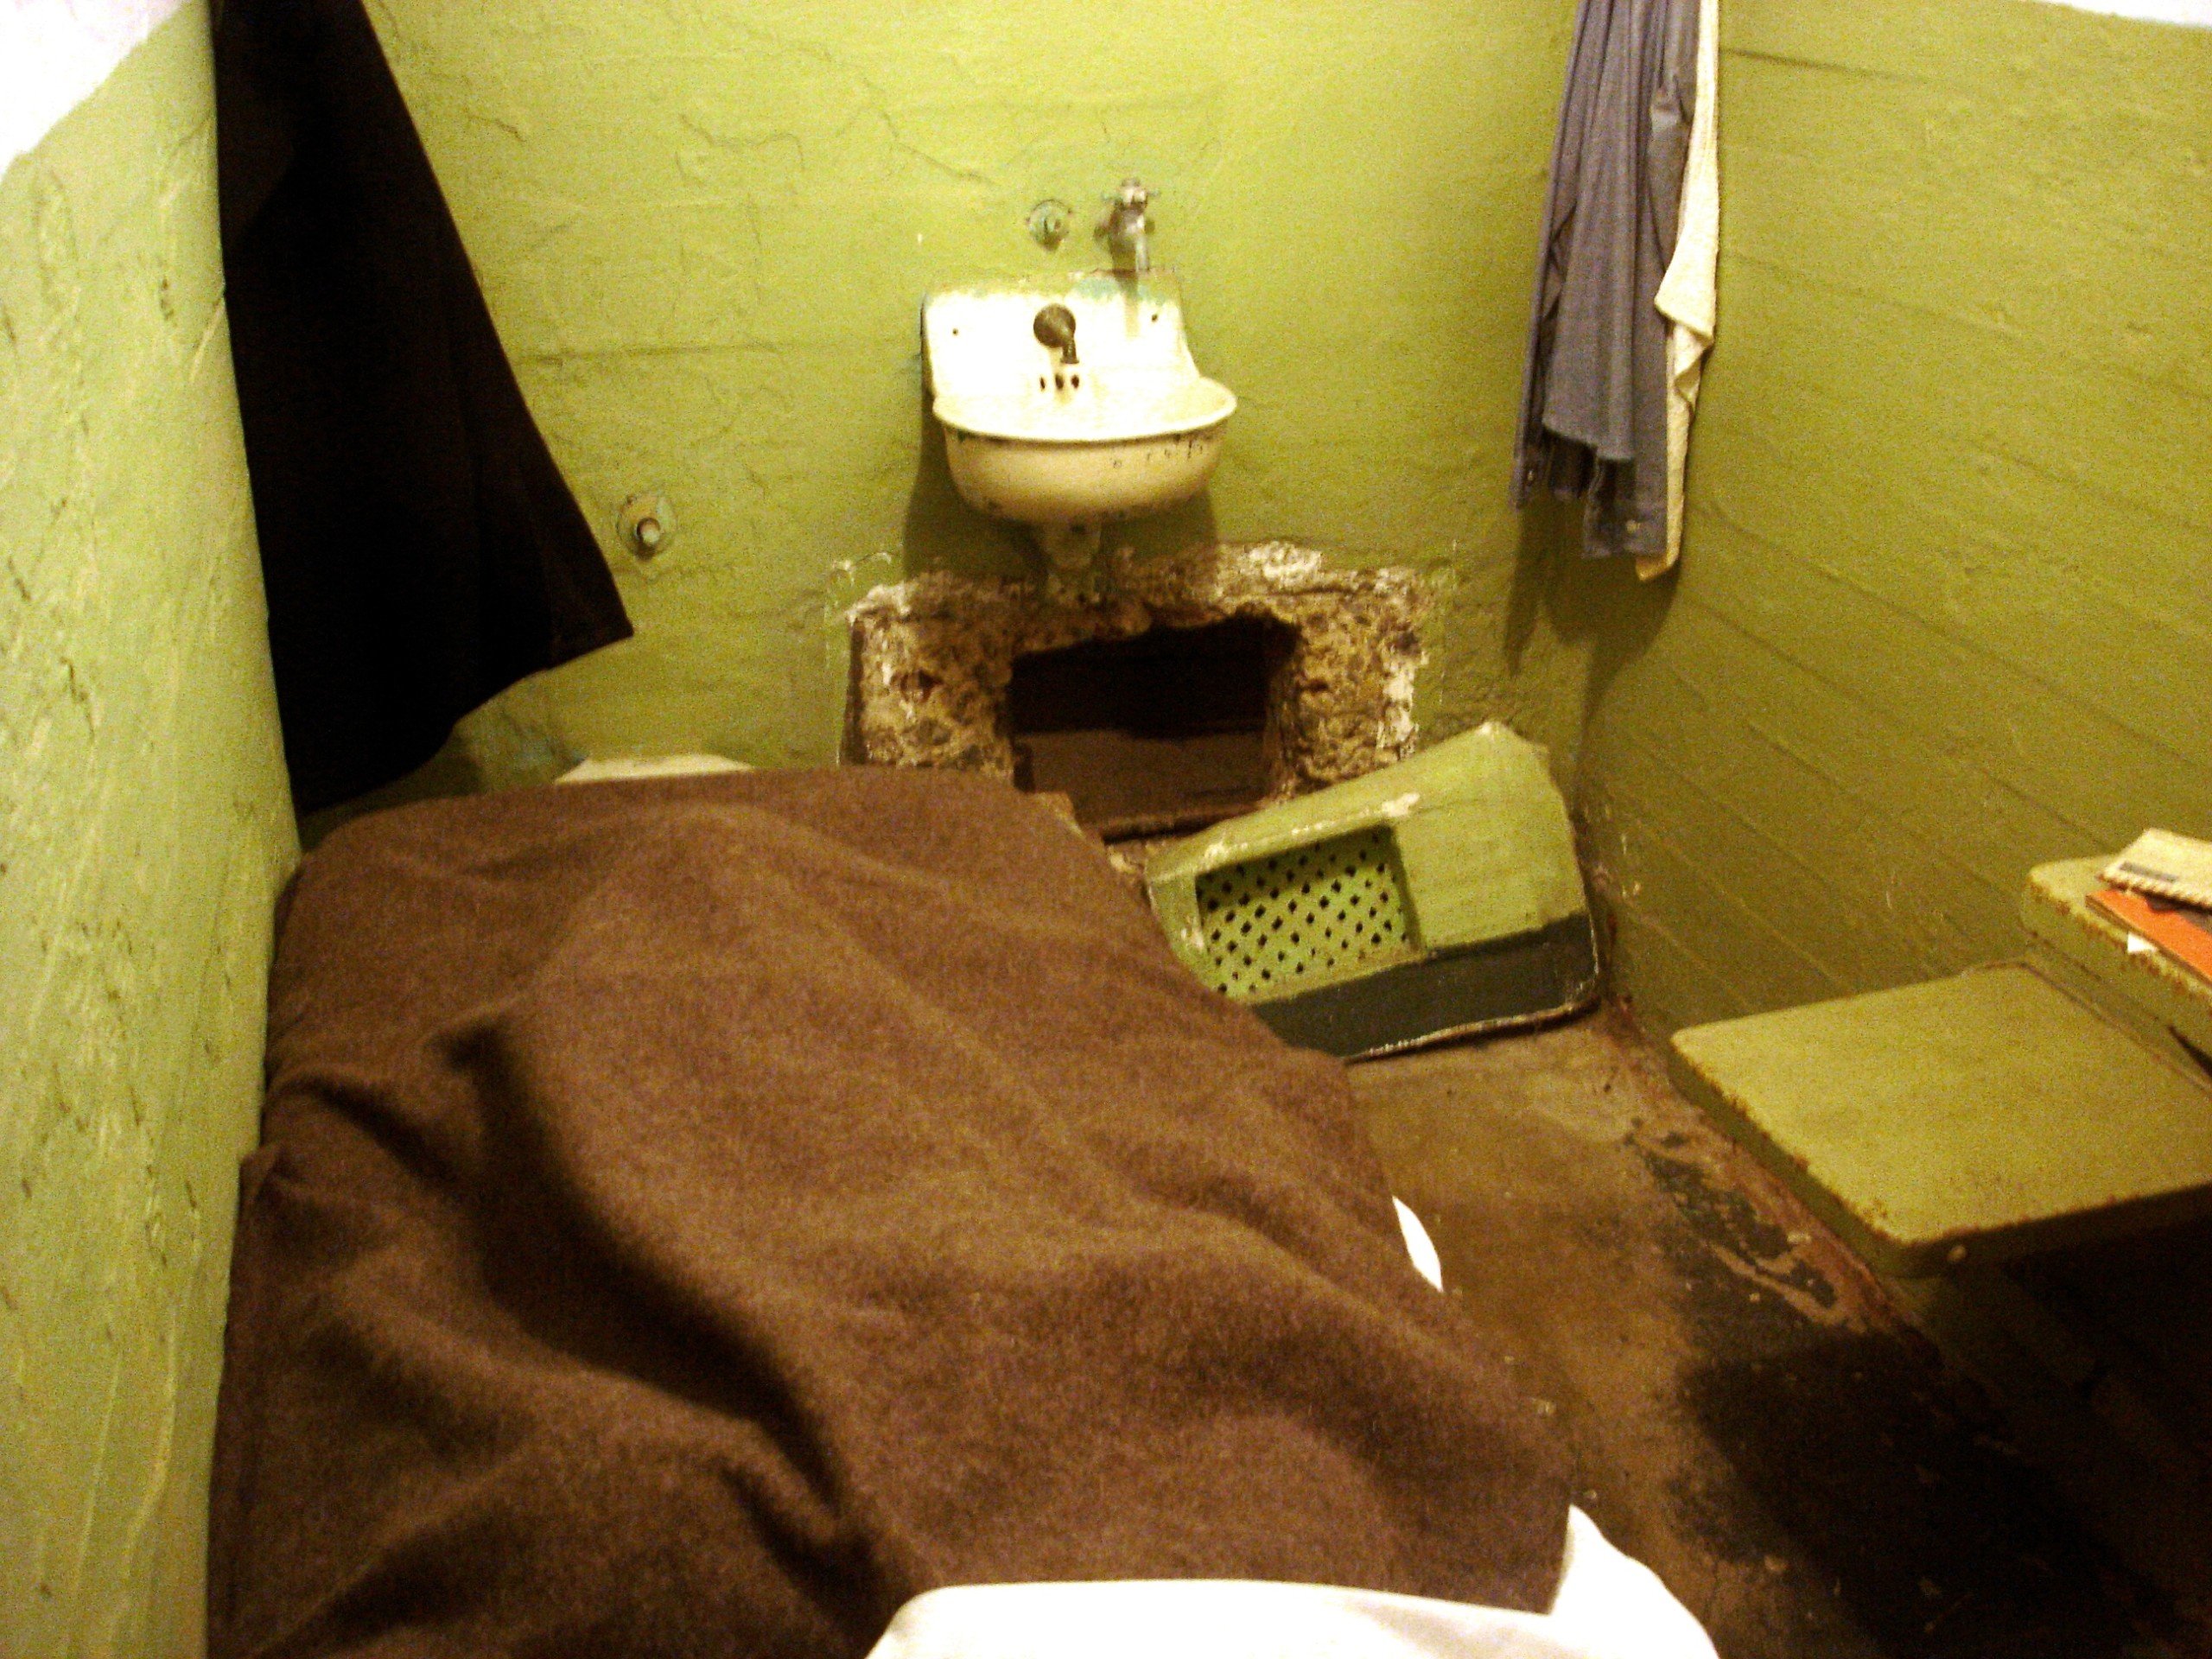 Escapee's prison cell